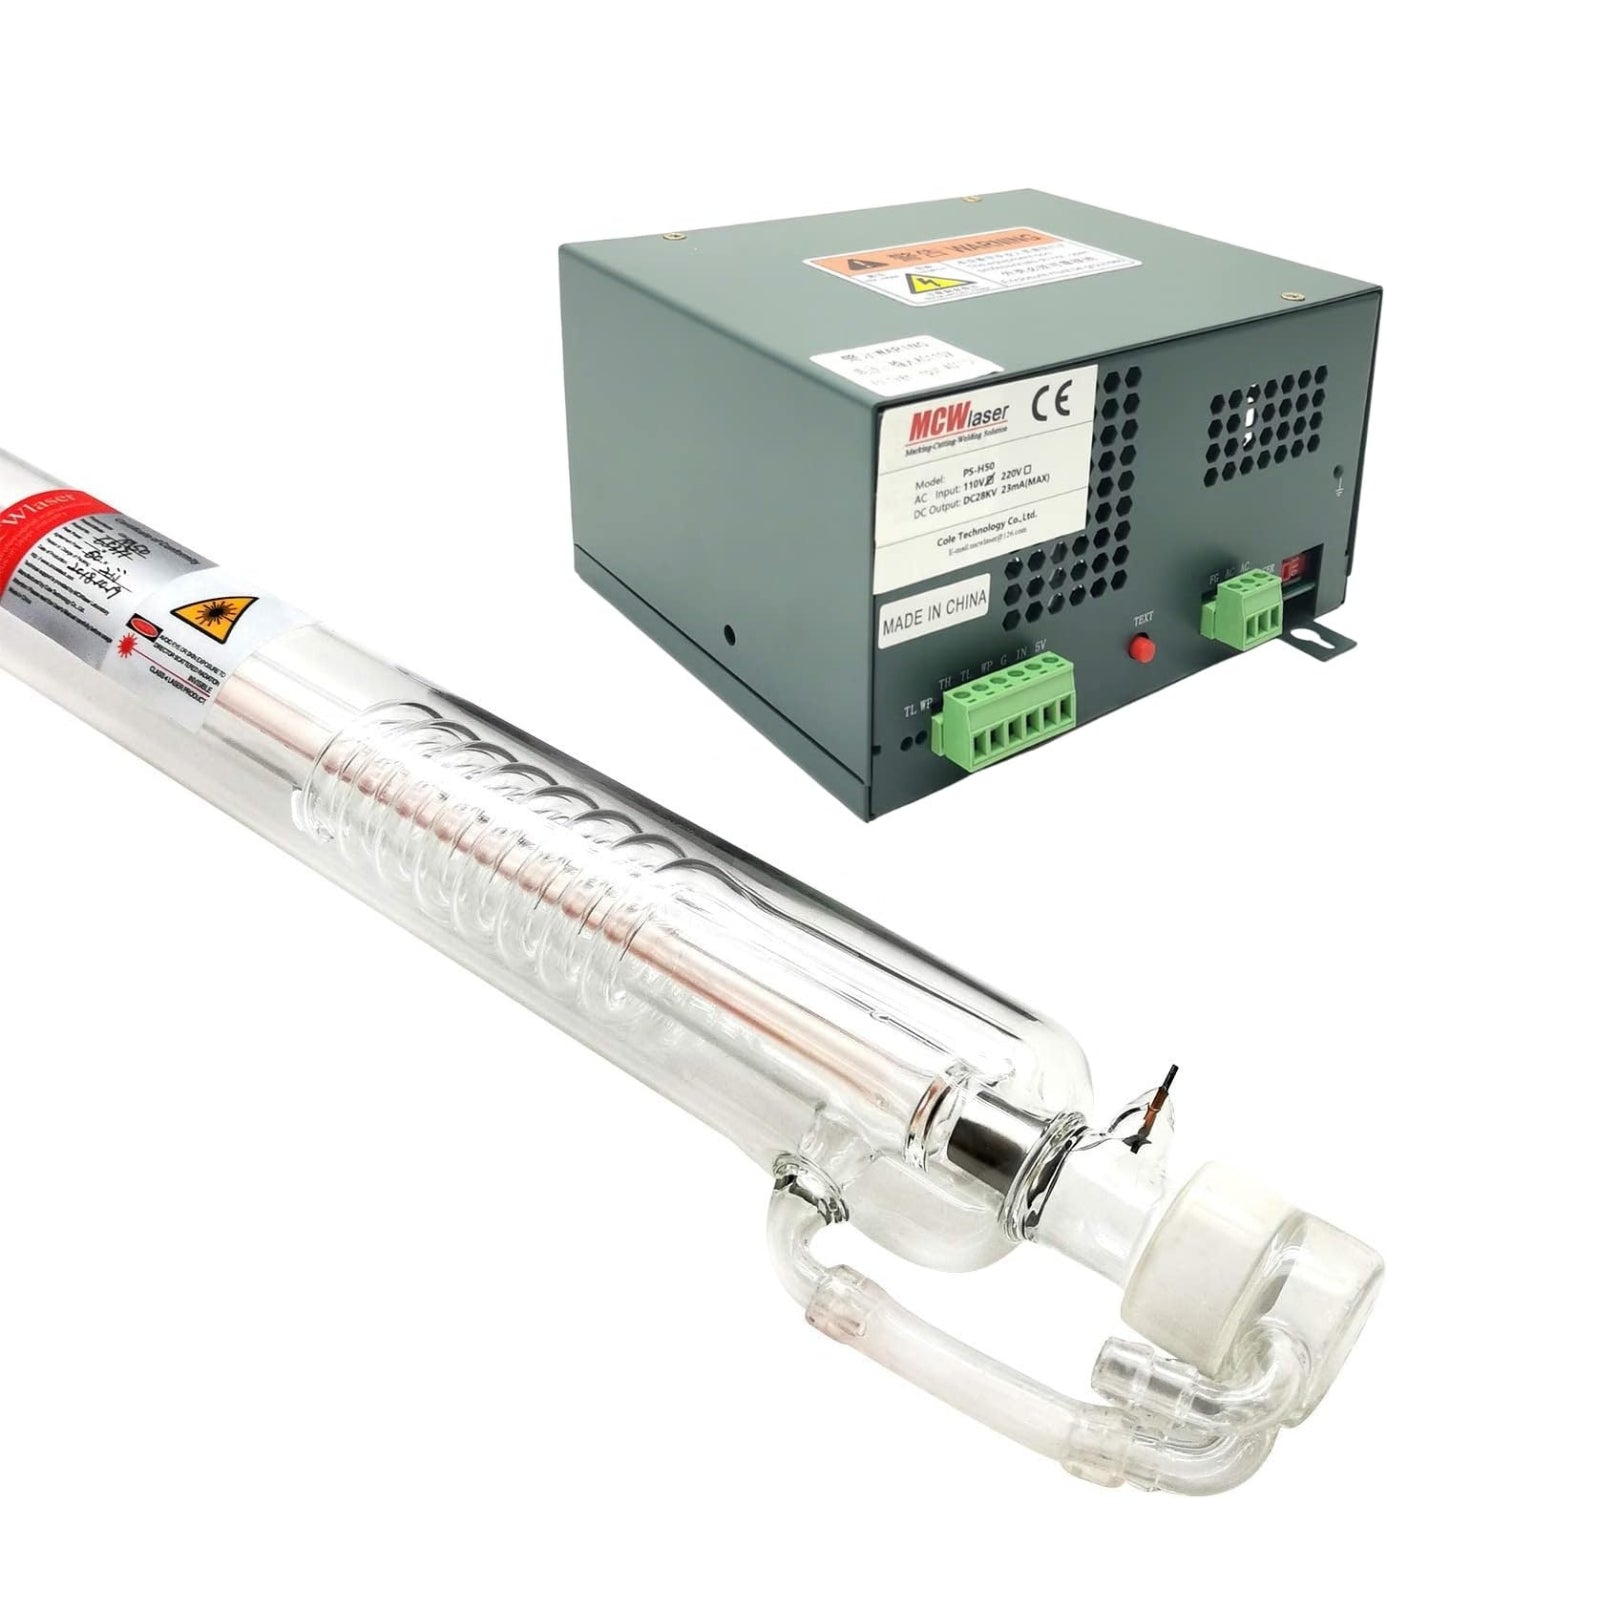 Tube laser CO2 MCWlaser 80 W (crête 100 W) 1250 mm + alimentation 80 W 110 V/220 V avec affichage LED 